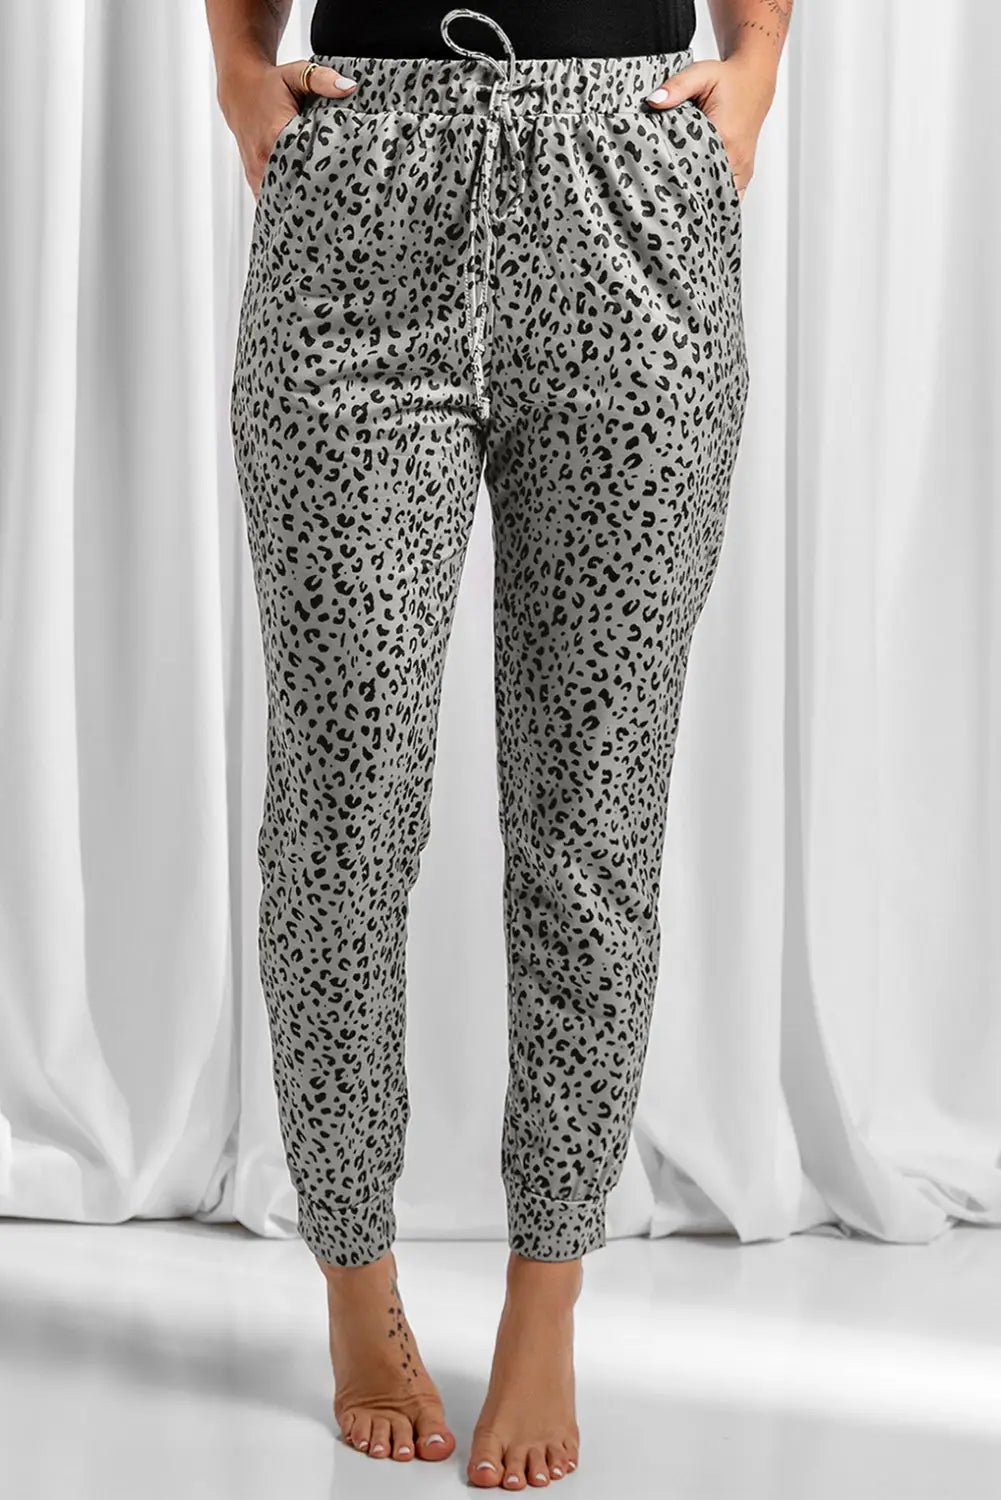 Khaki breezy leopard joggers - s / 95% polyester + 5% spandex